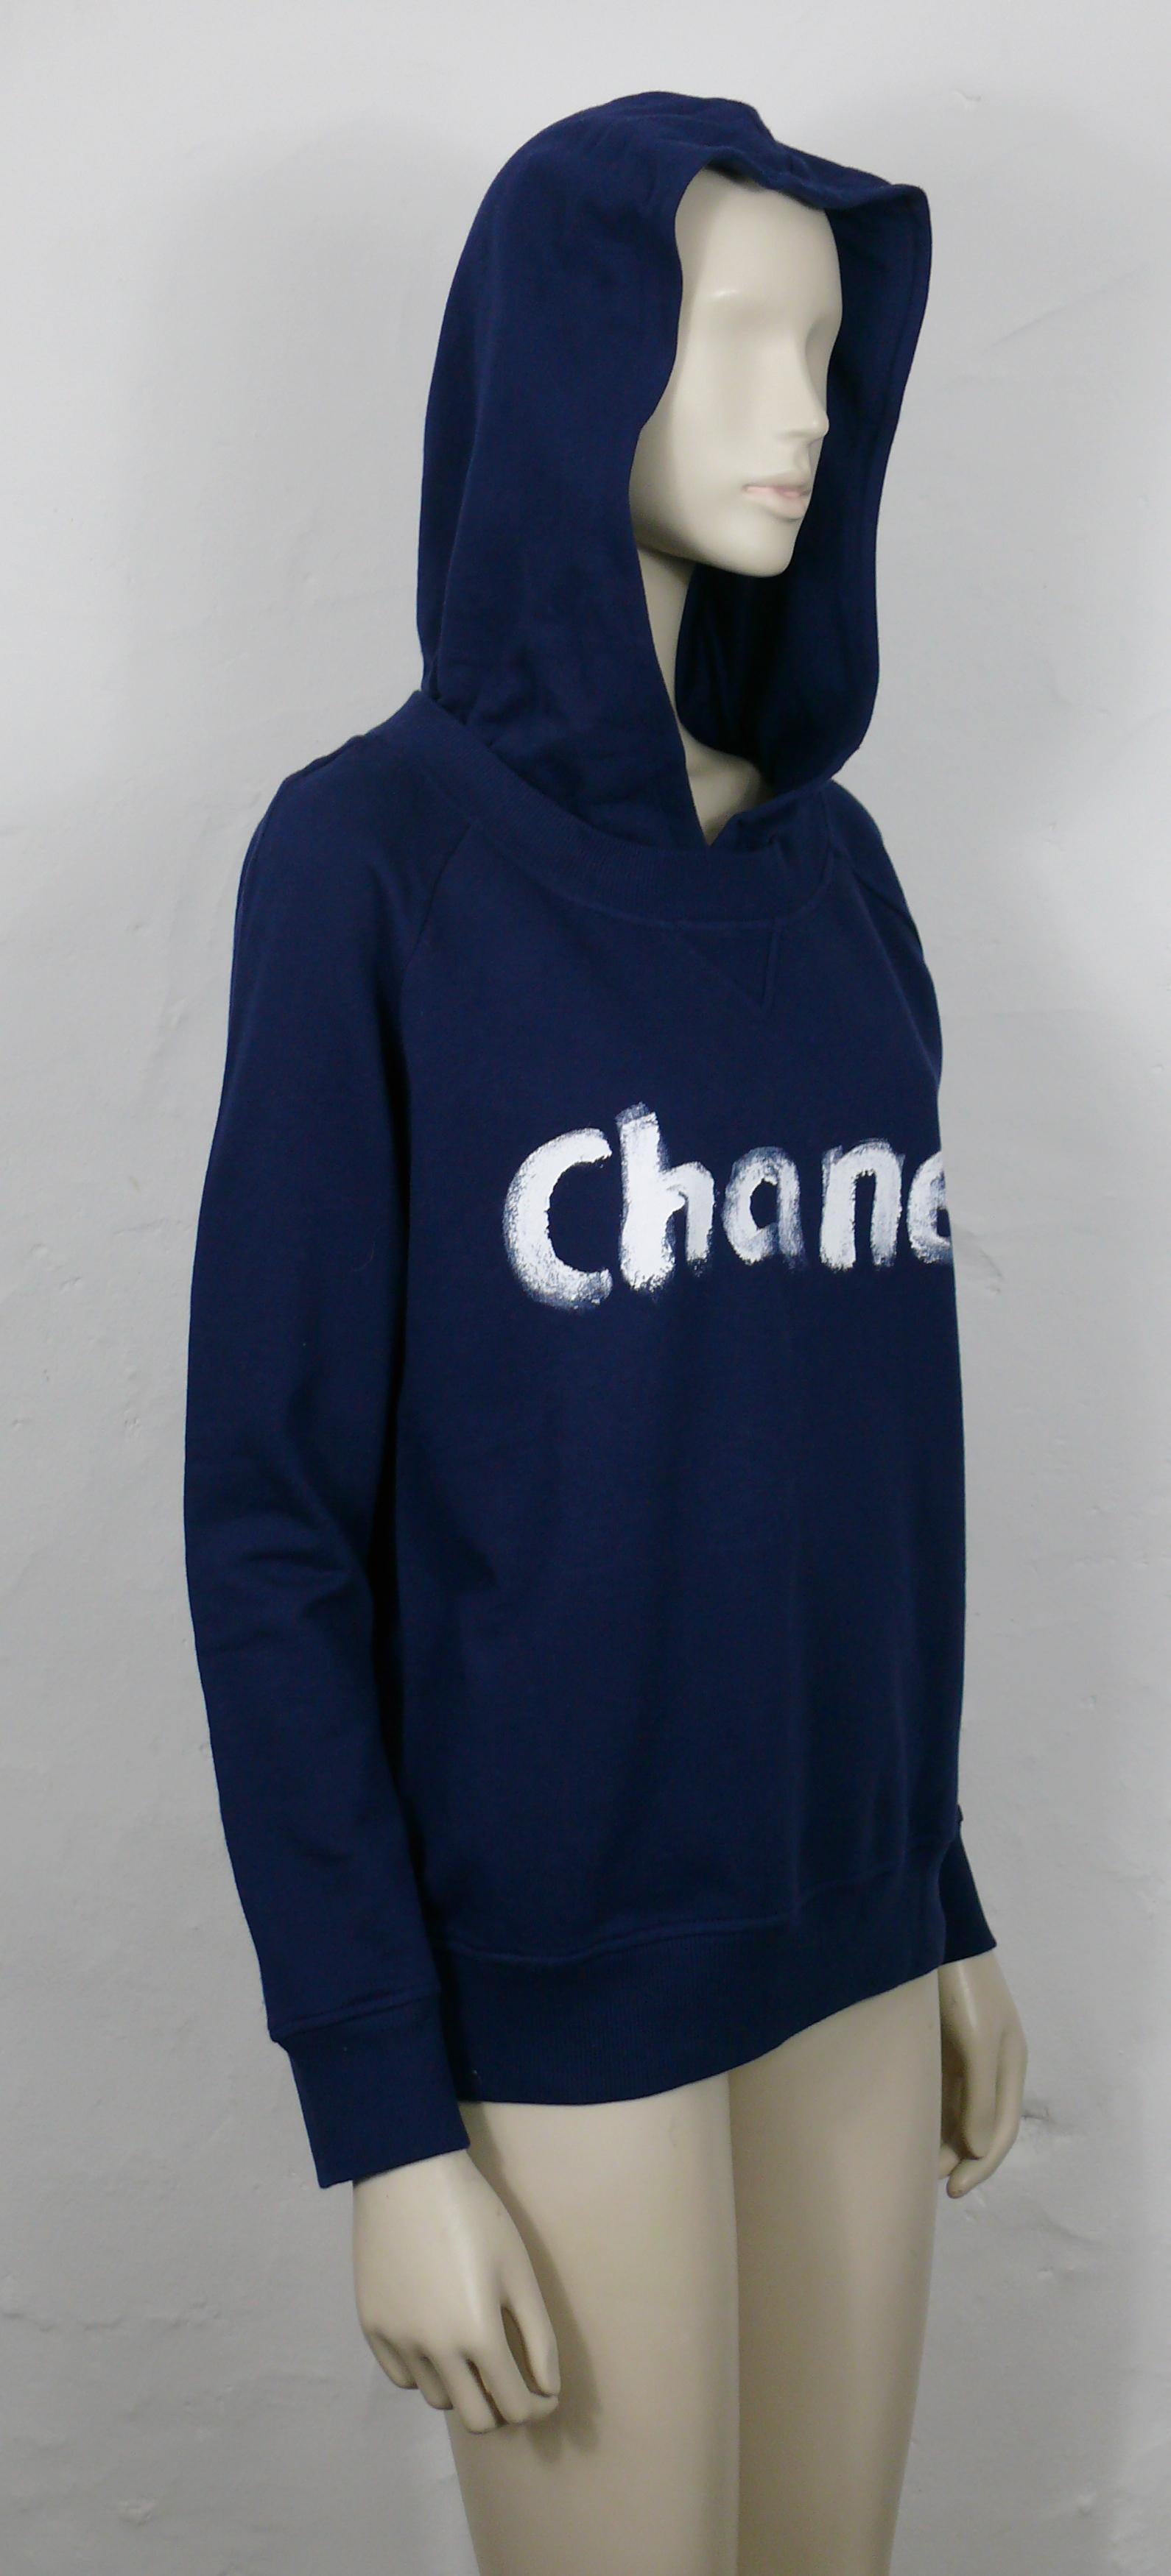 Chanel Sweatshirt - 8 For Sale on 1stDibs